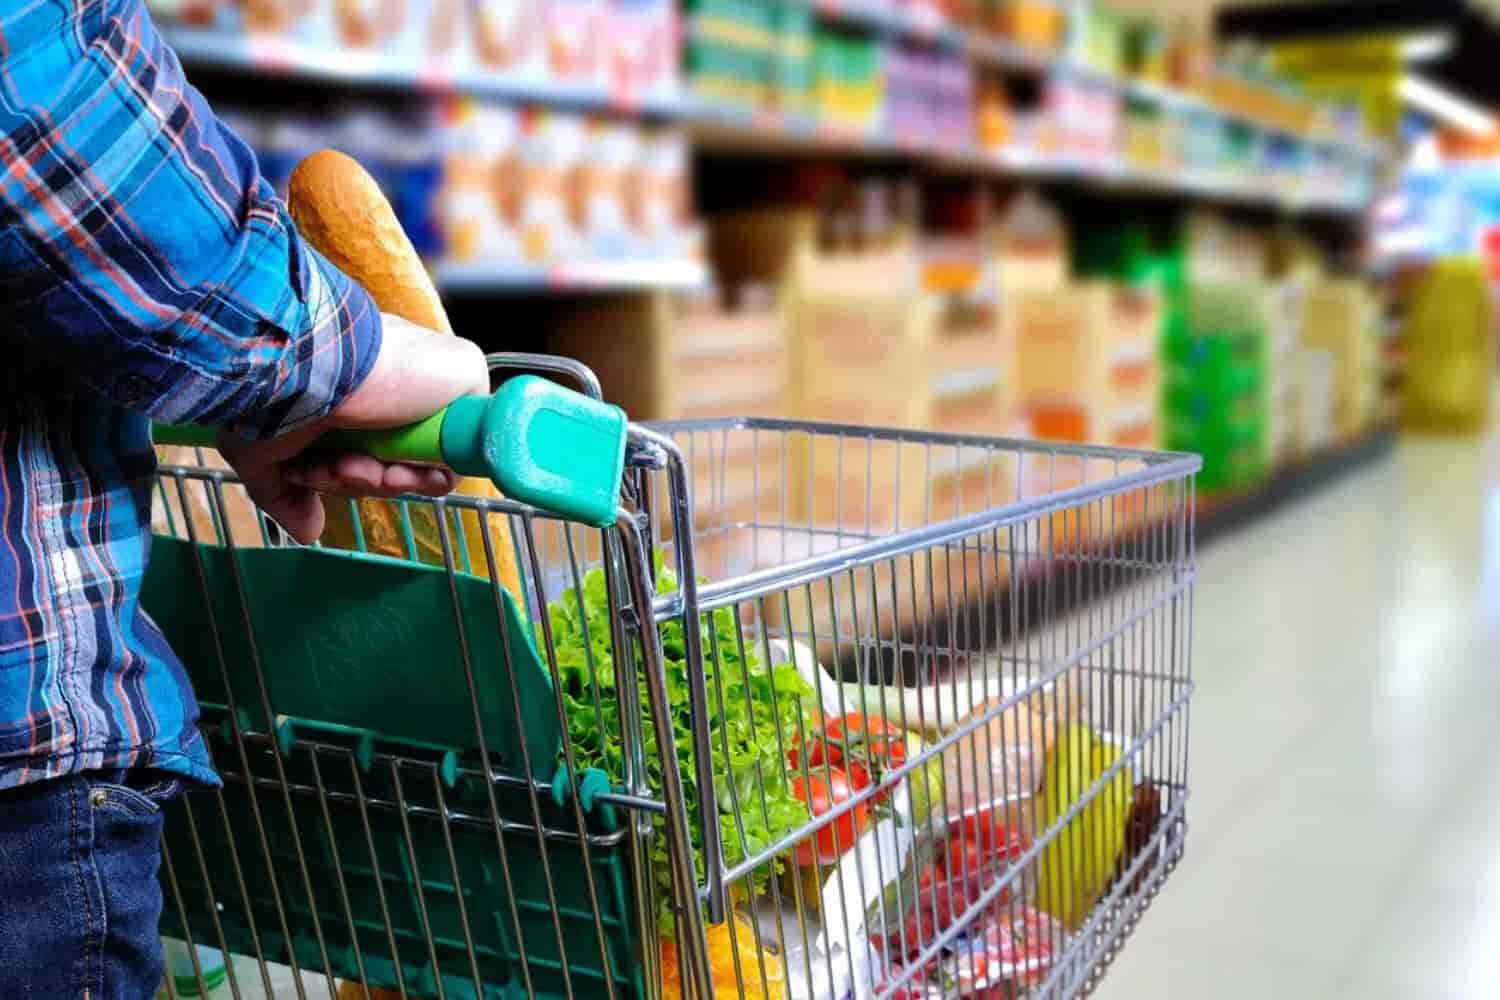 Bpo Financeiro Para Supermercados Descubra 5 Vantagens Incríveis Que Vão Transformar O Seu Negócio - VAREJO CONTABIL E SERVICOS EIRELI